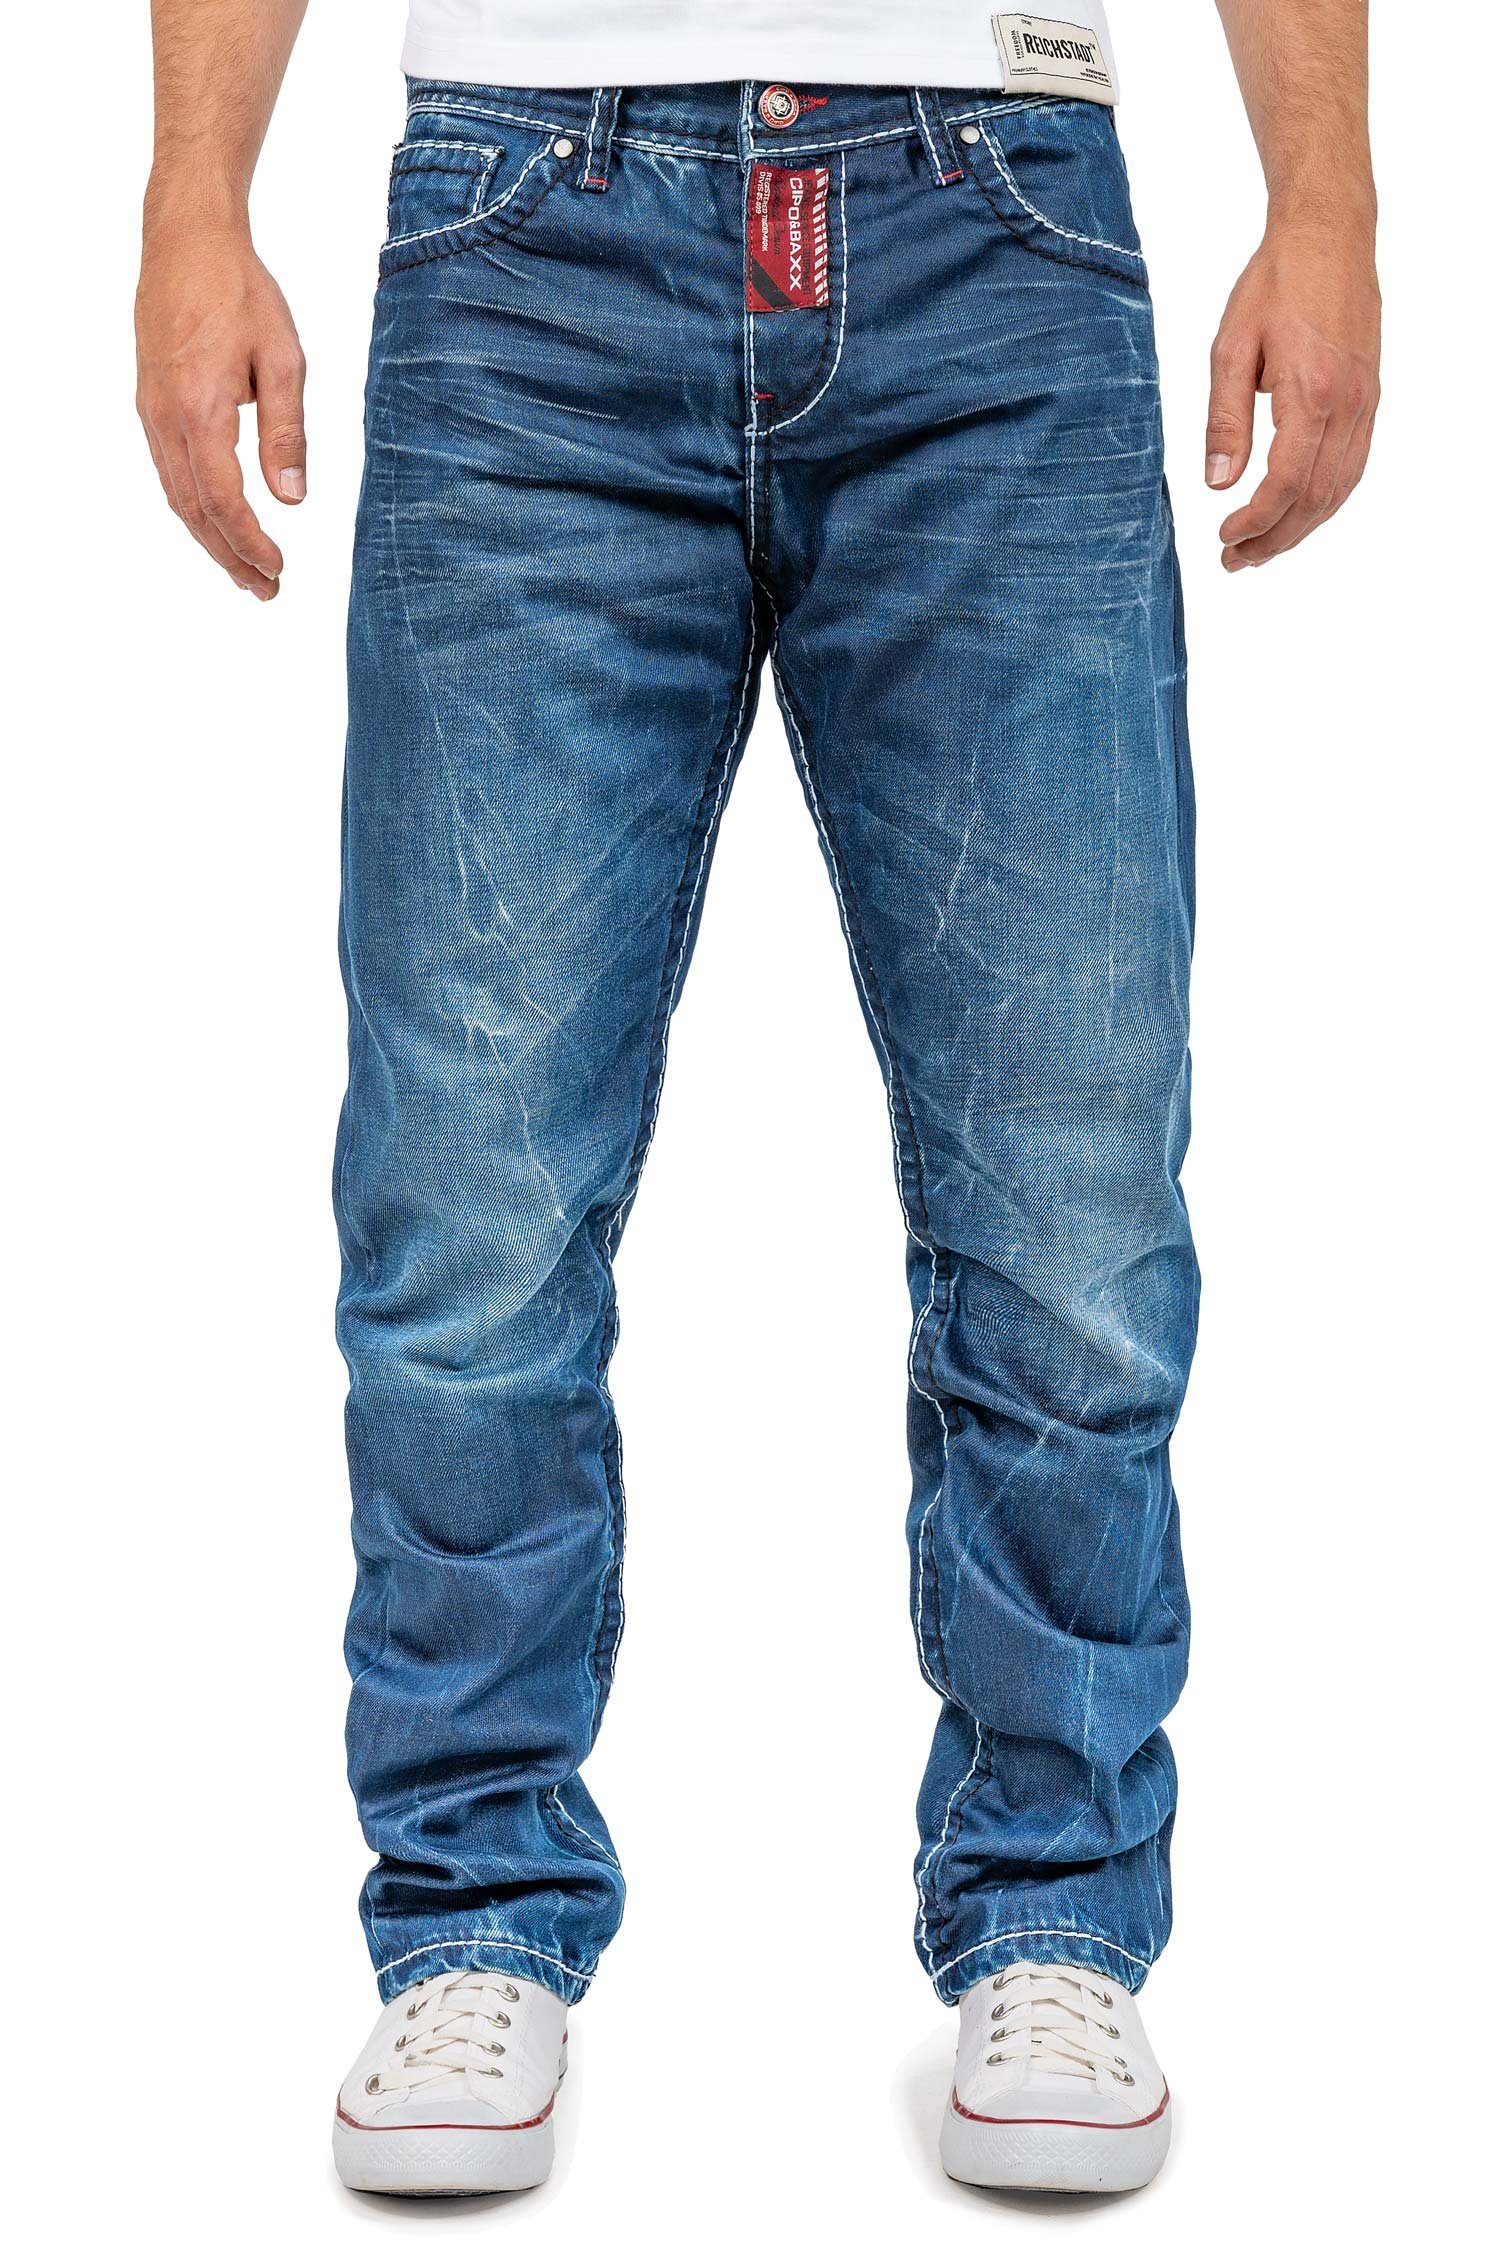 Cipo & Baxx Straight-Jeans Casual Hose BA-CD709 mit Stylischen Verzierungen